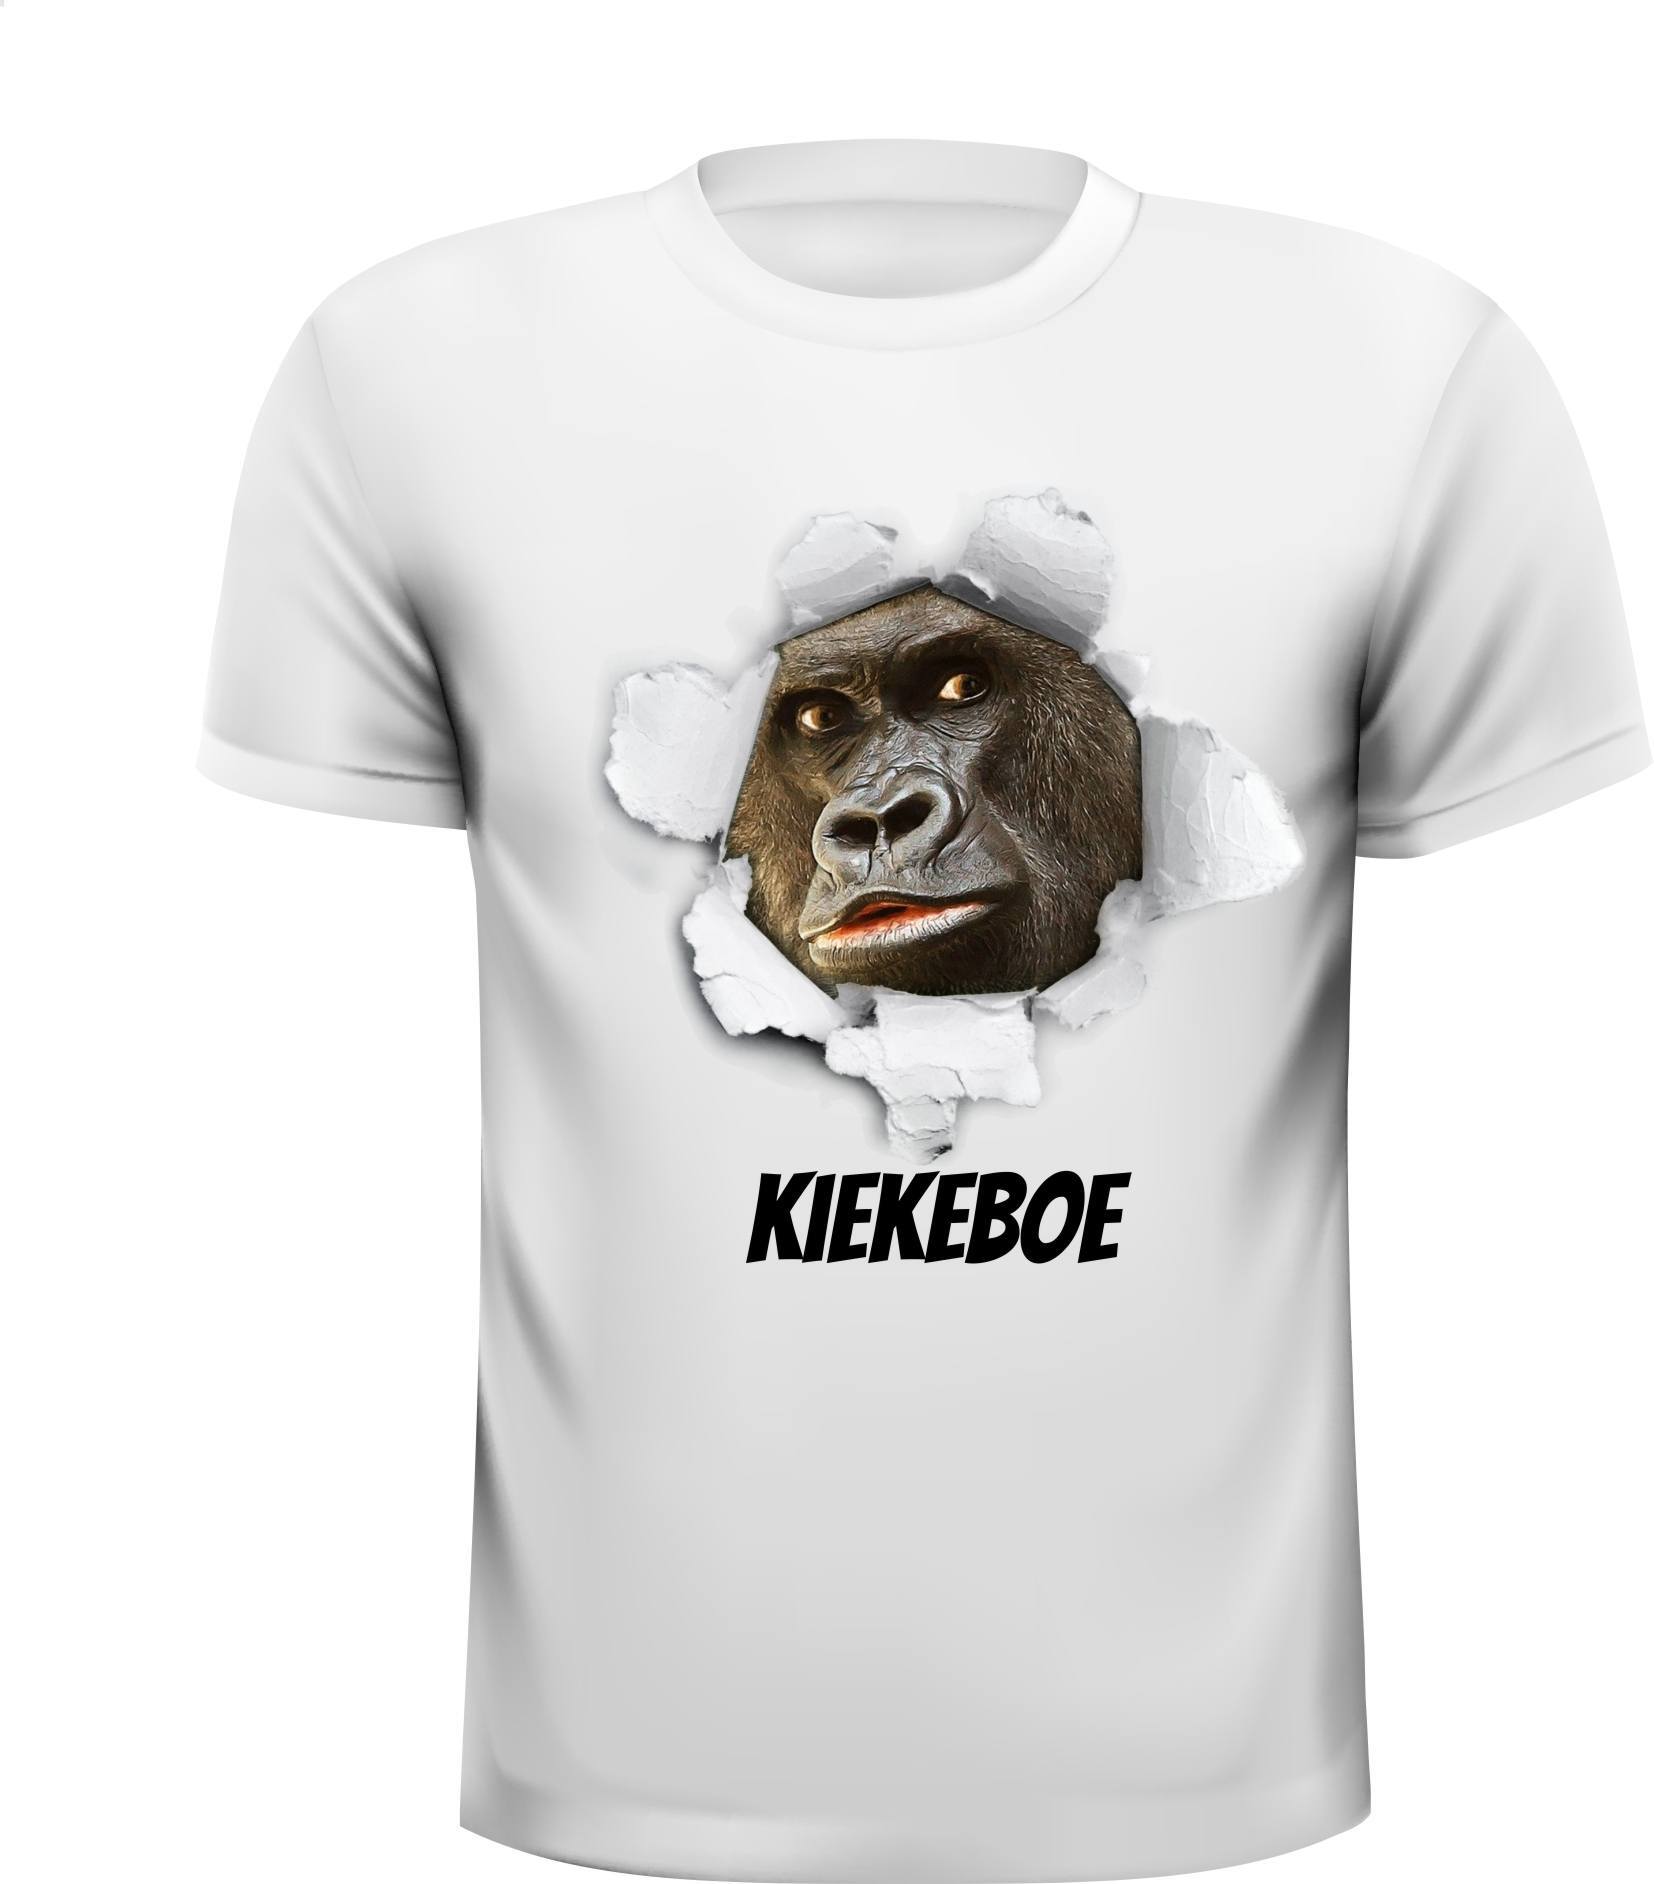 Kiekeboe aap grappig gek t-shirt gek humor